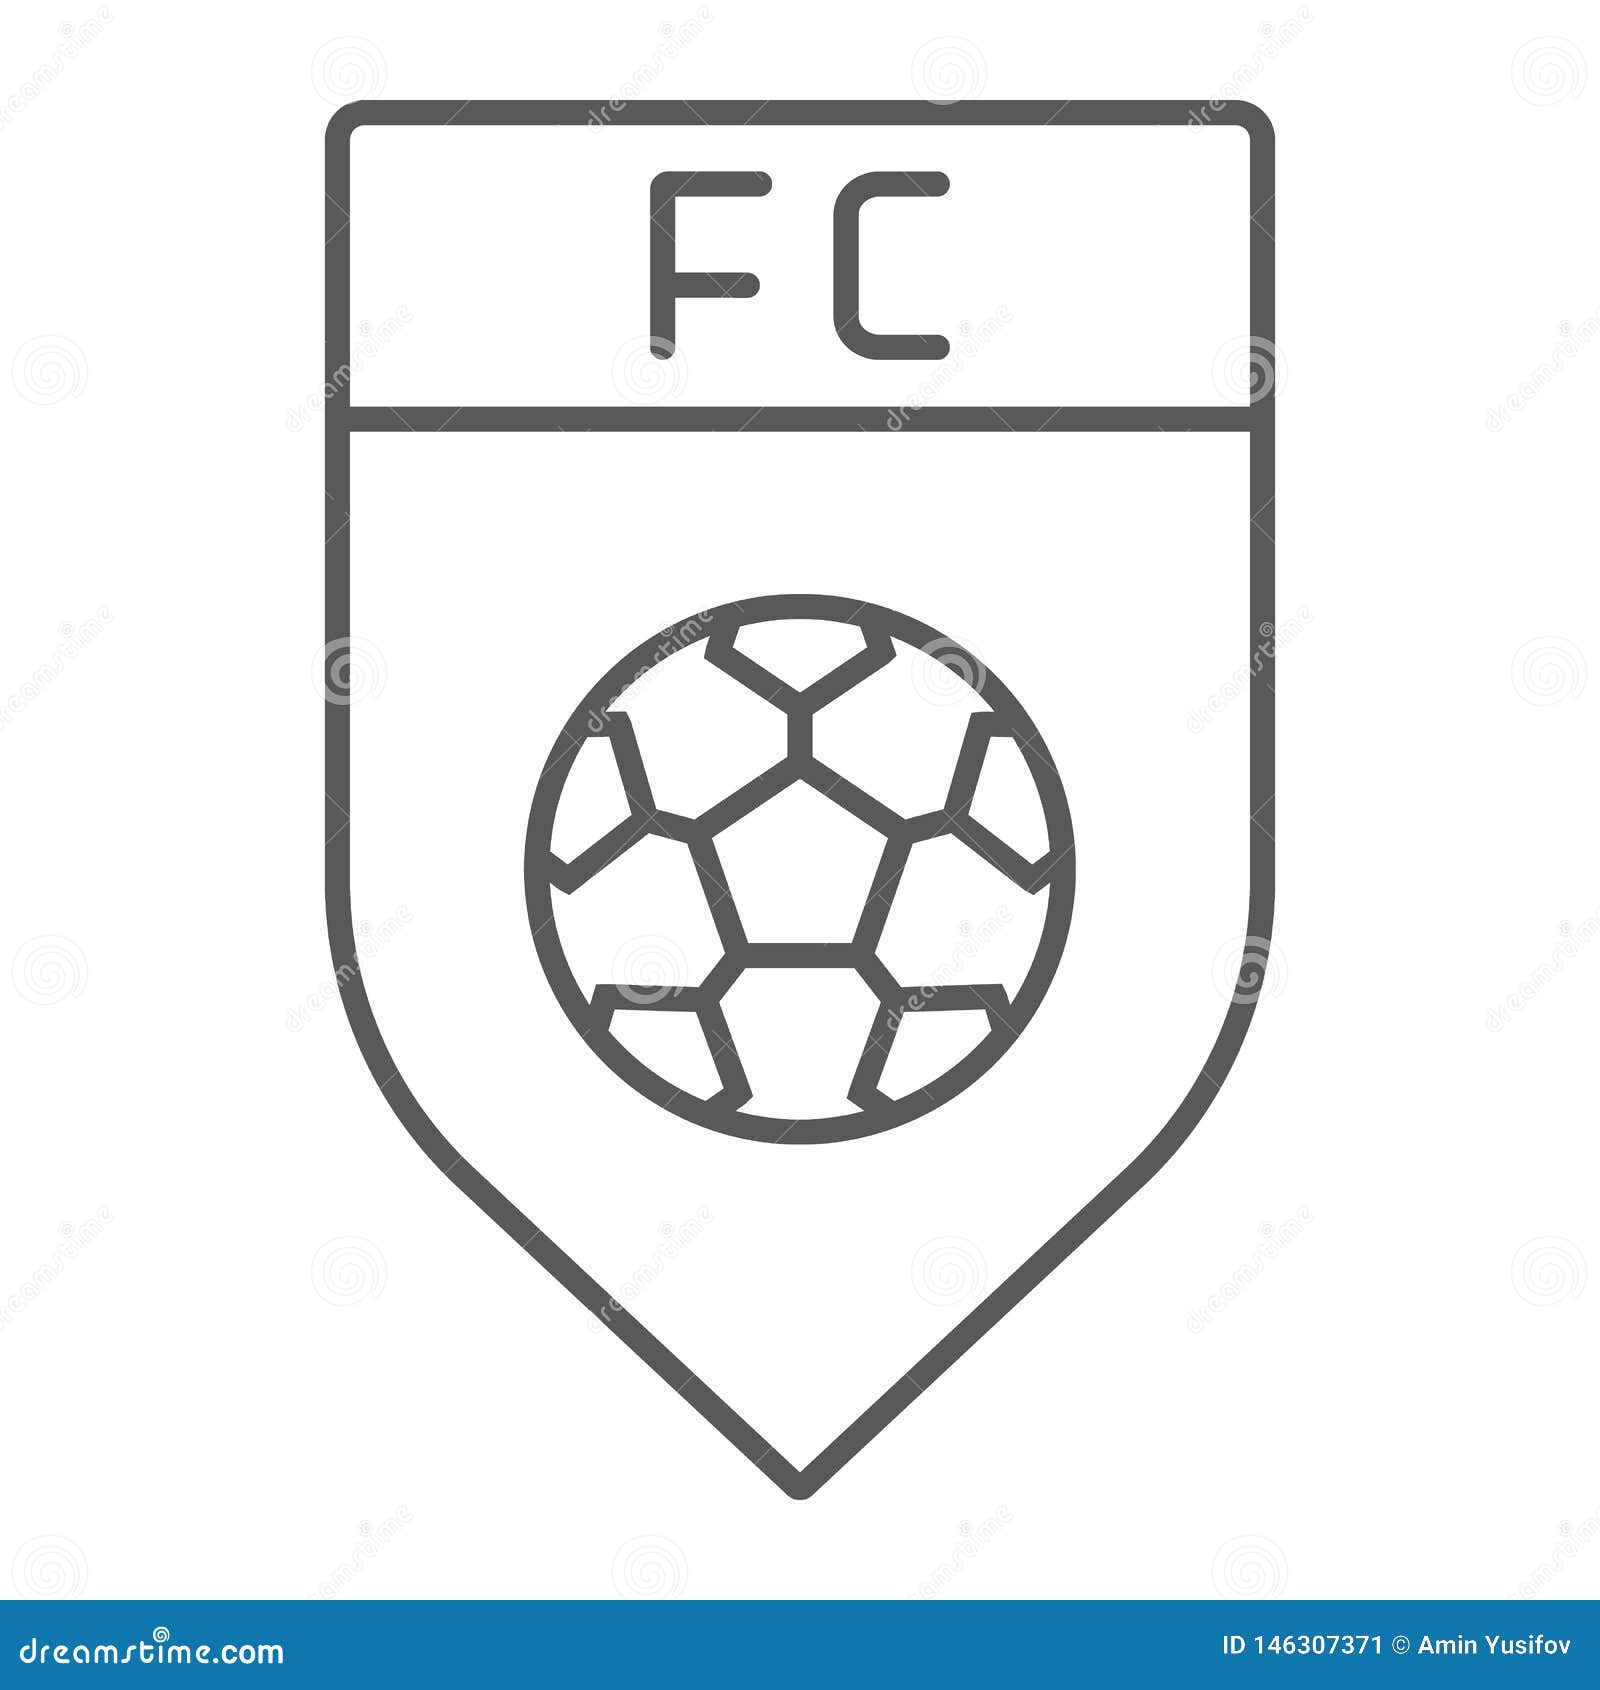 Таблица чб по футболу. Футбольный логотип шаблон. Пустая эмблема футбольного клуба. Макет футбольной эмблемы. Заготовки для футбольного логотипа.